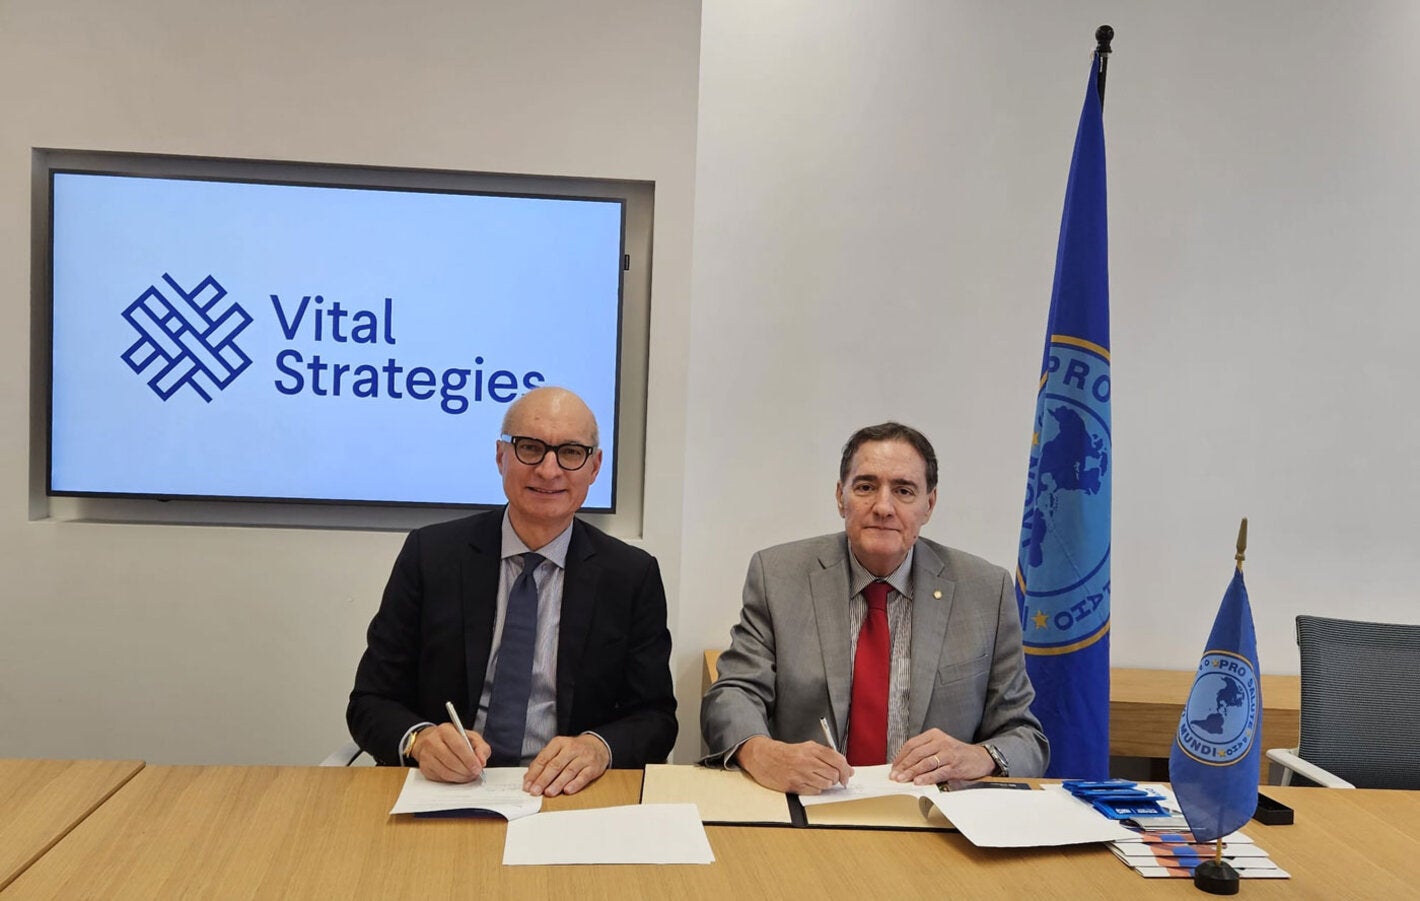  La Organización Panamericana de la Salud (OPS) y Vital Strategies firmaron hoy un nuevo acuerdo para mejorar el uso de datos y evidencias con el fin de abordar los desafíos de salud en la región de las Américas.